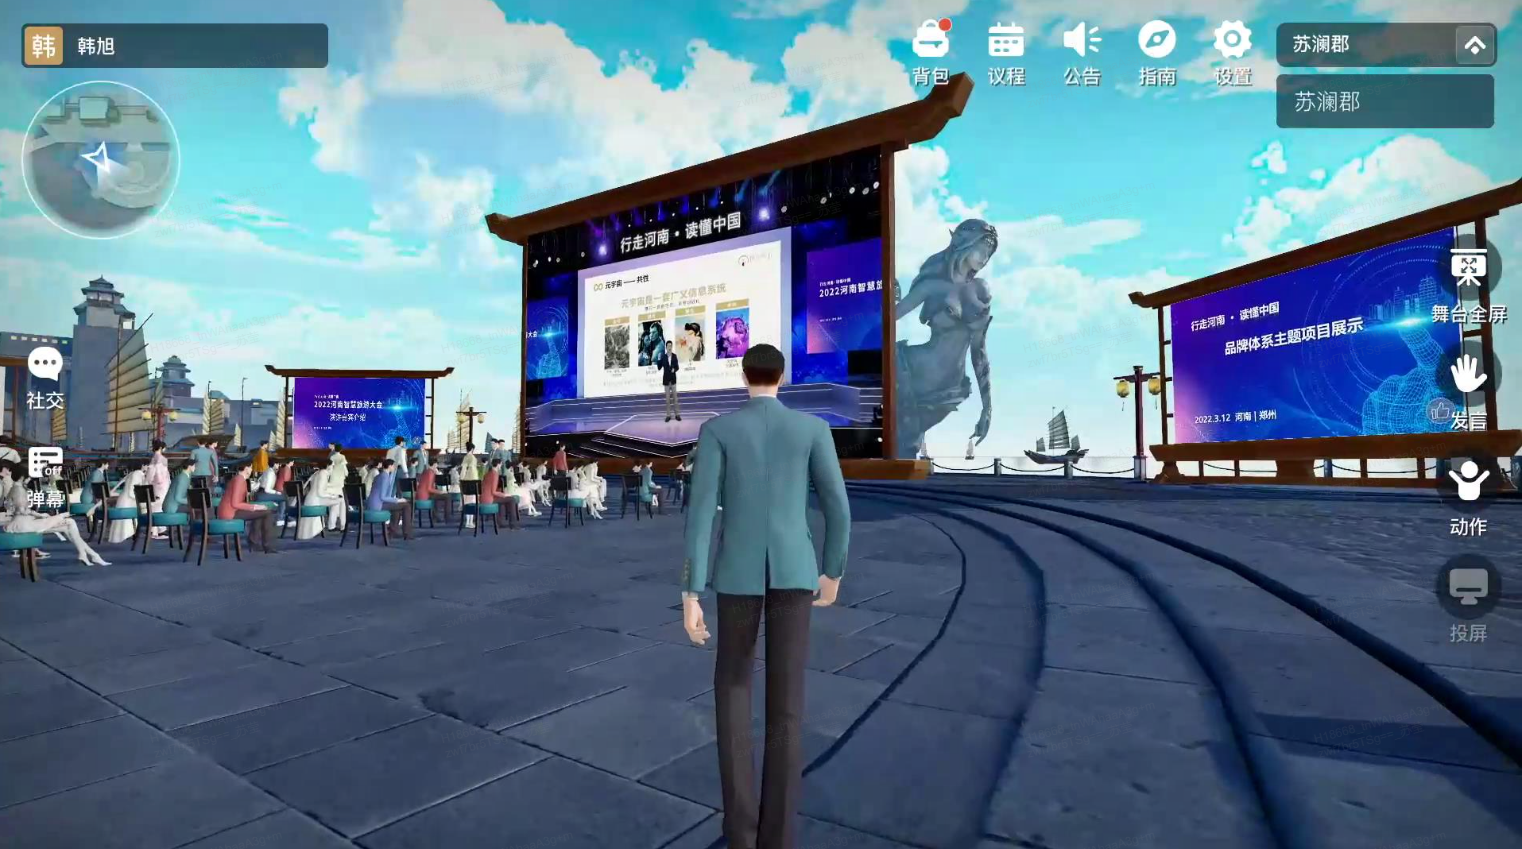 图片展示了一个三维模拟环境，中间是一位穿着正装的虚拟角色背对观众，前方有一个大型屏幕和一些虚拟观众。